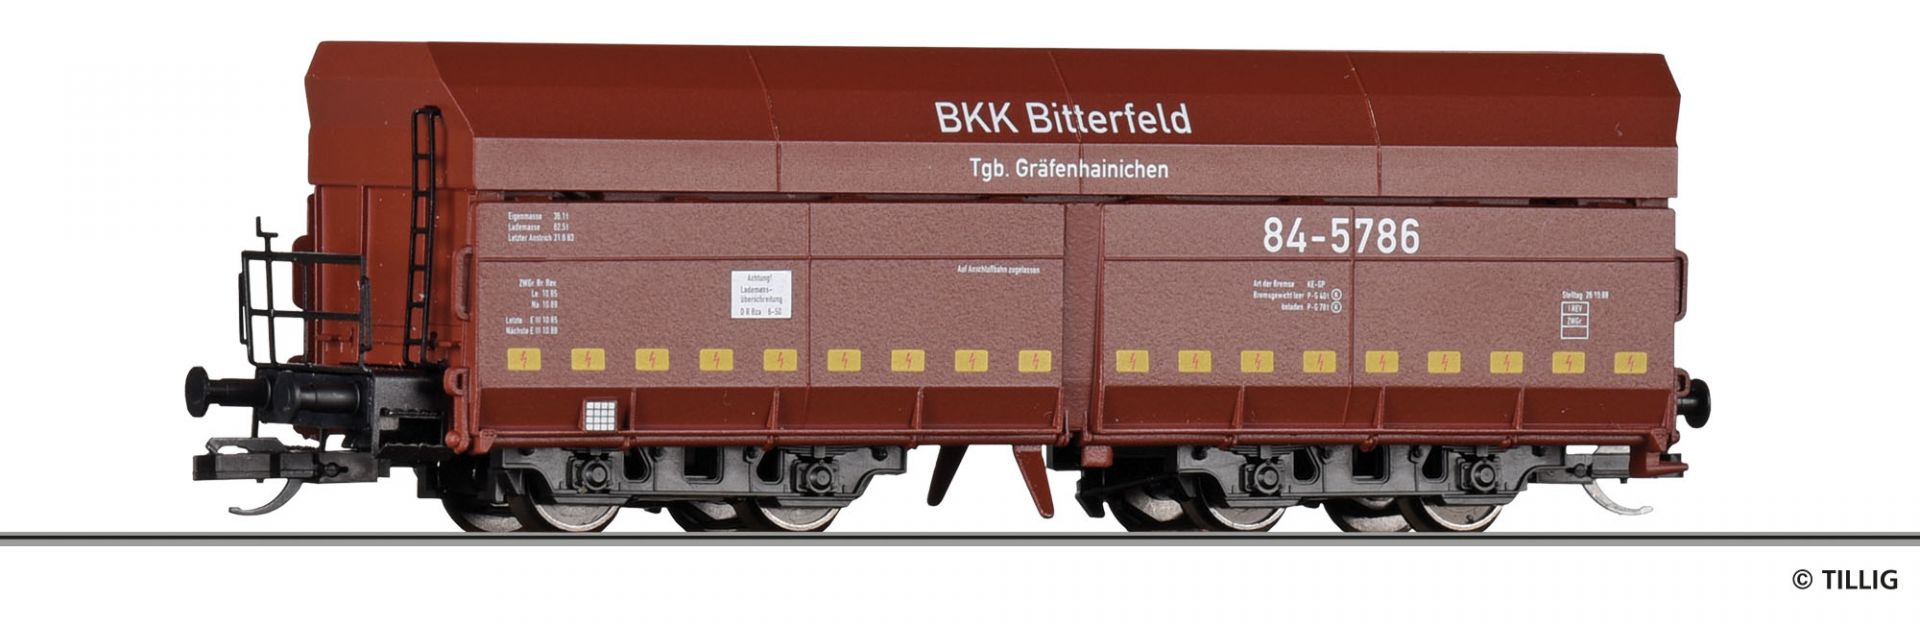 502273 | Selbstentladewagen BKK Bitterfeld